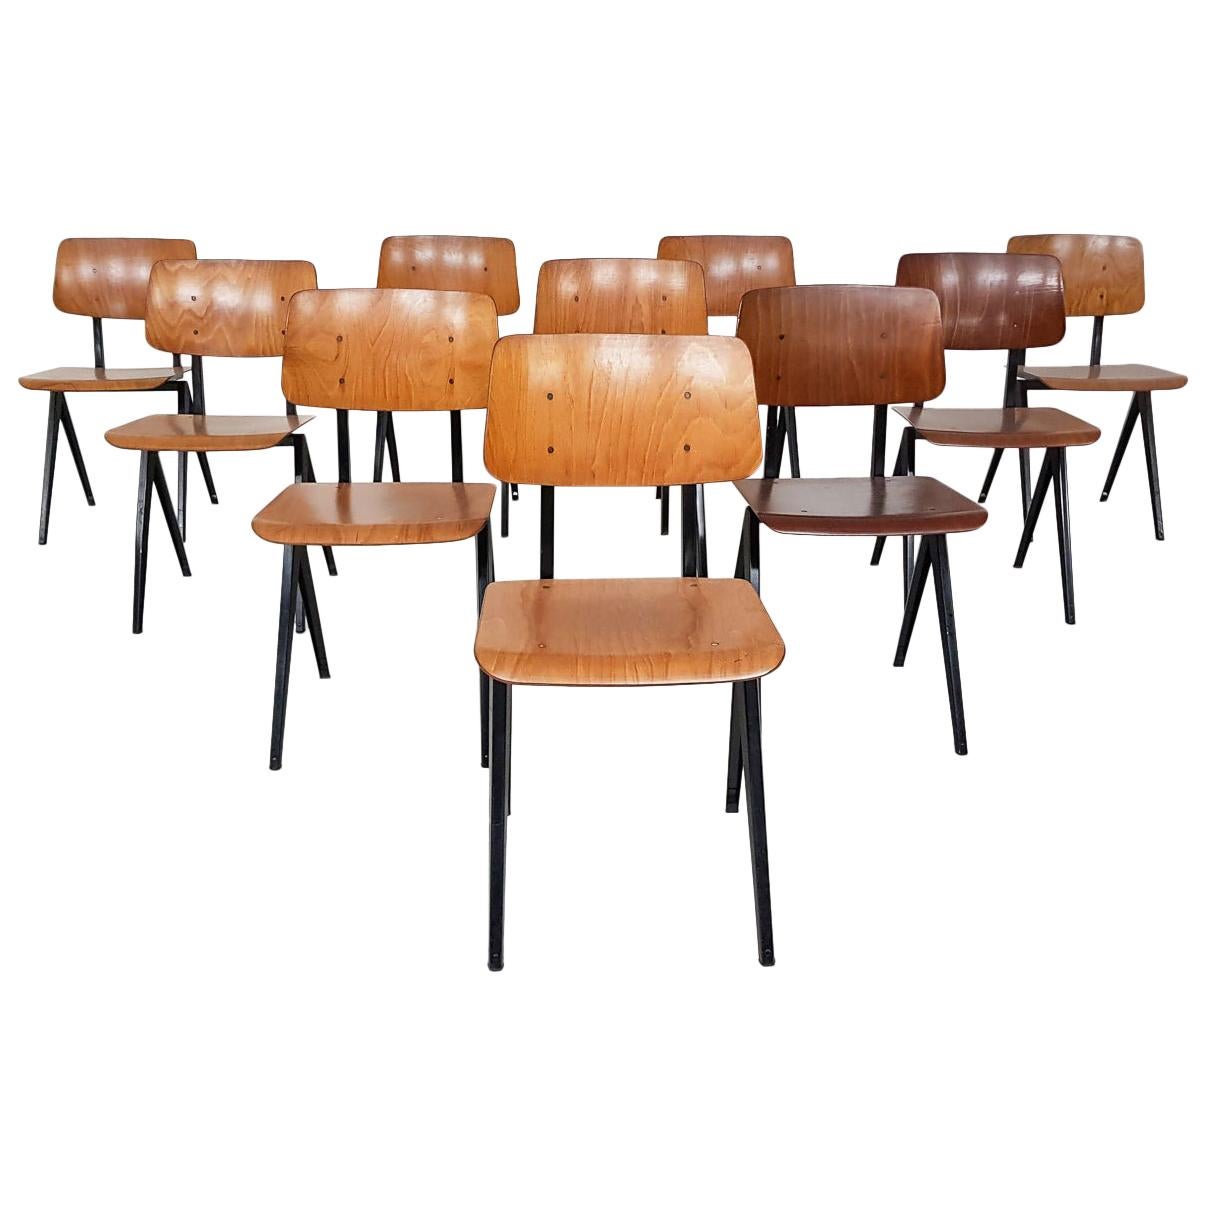 Set of 10 Galavanitas S16 Industrial Plywood School Chairs, Dutch Design, 1960s